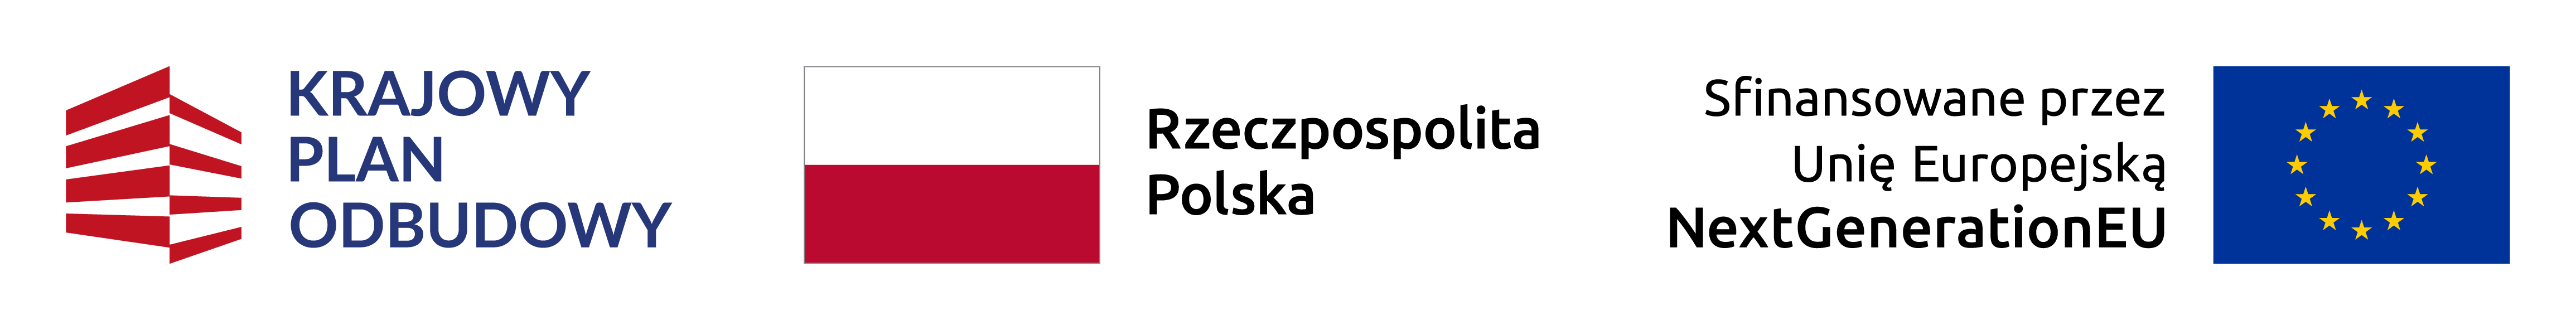 loga od lewej krajowy plan odbudowy, środek flaga Rzeczypospolitej Polskiej, prawo logo Unia Europejska NextGenerationEU